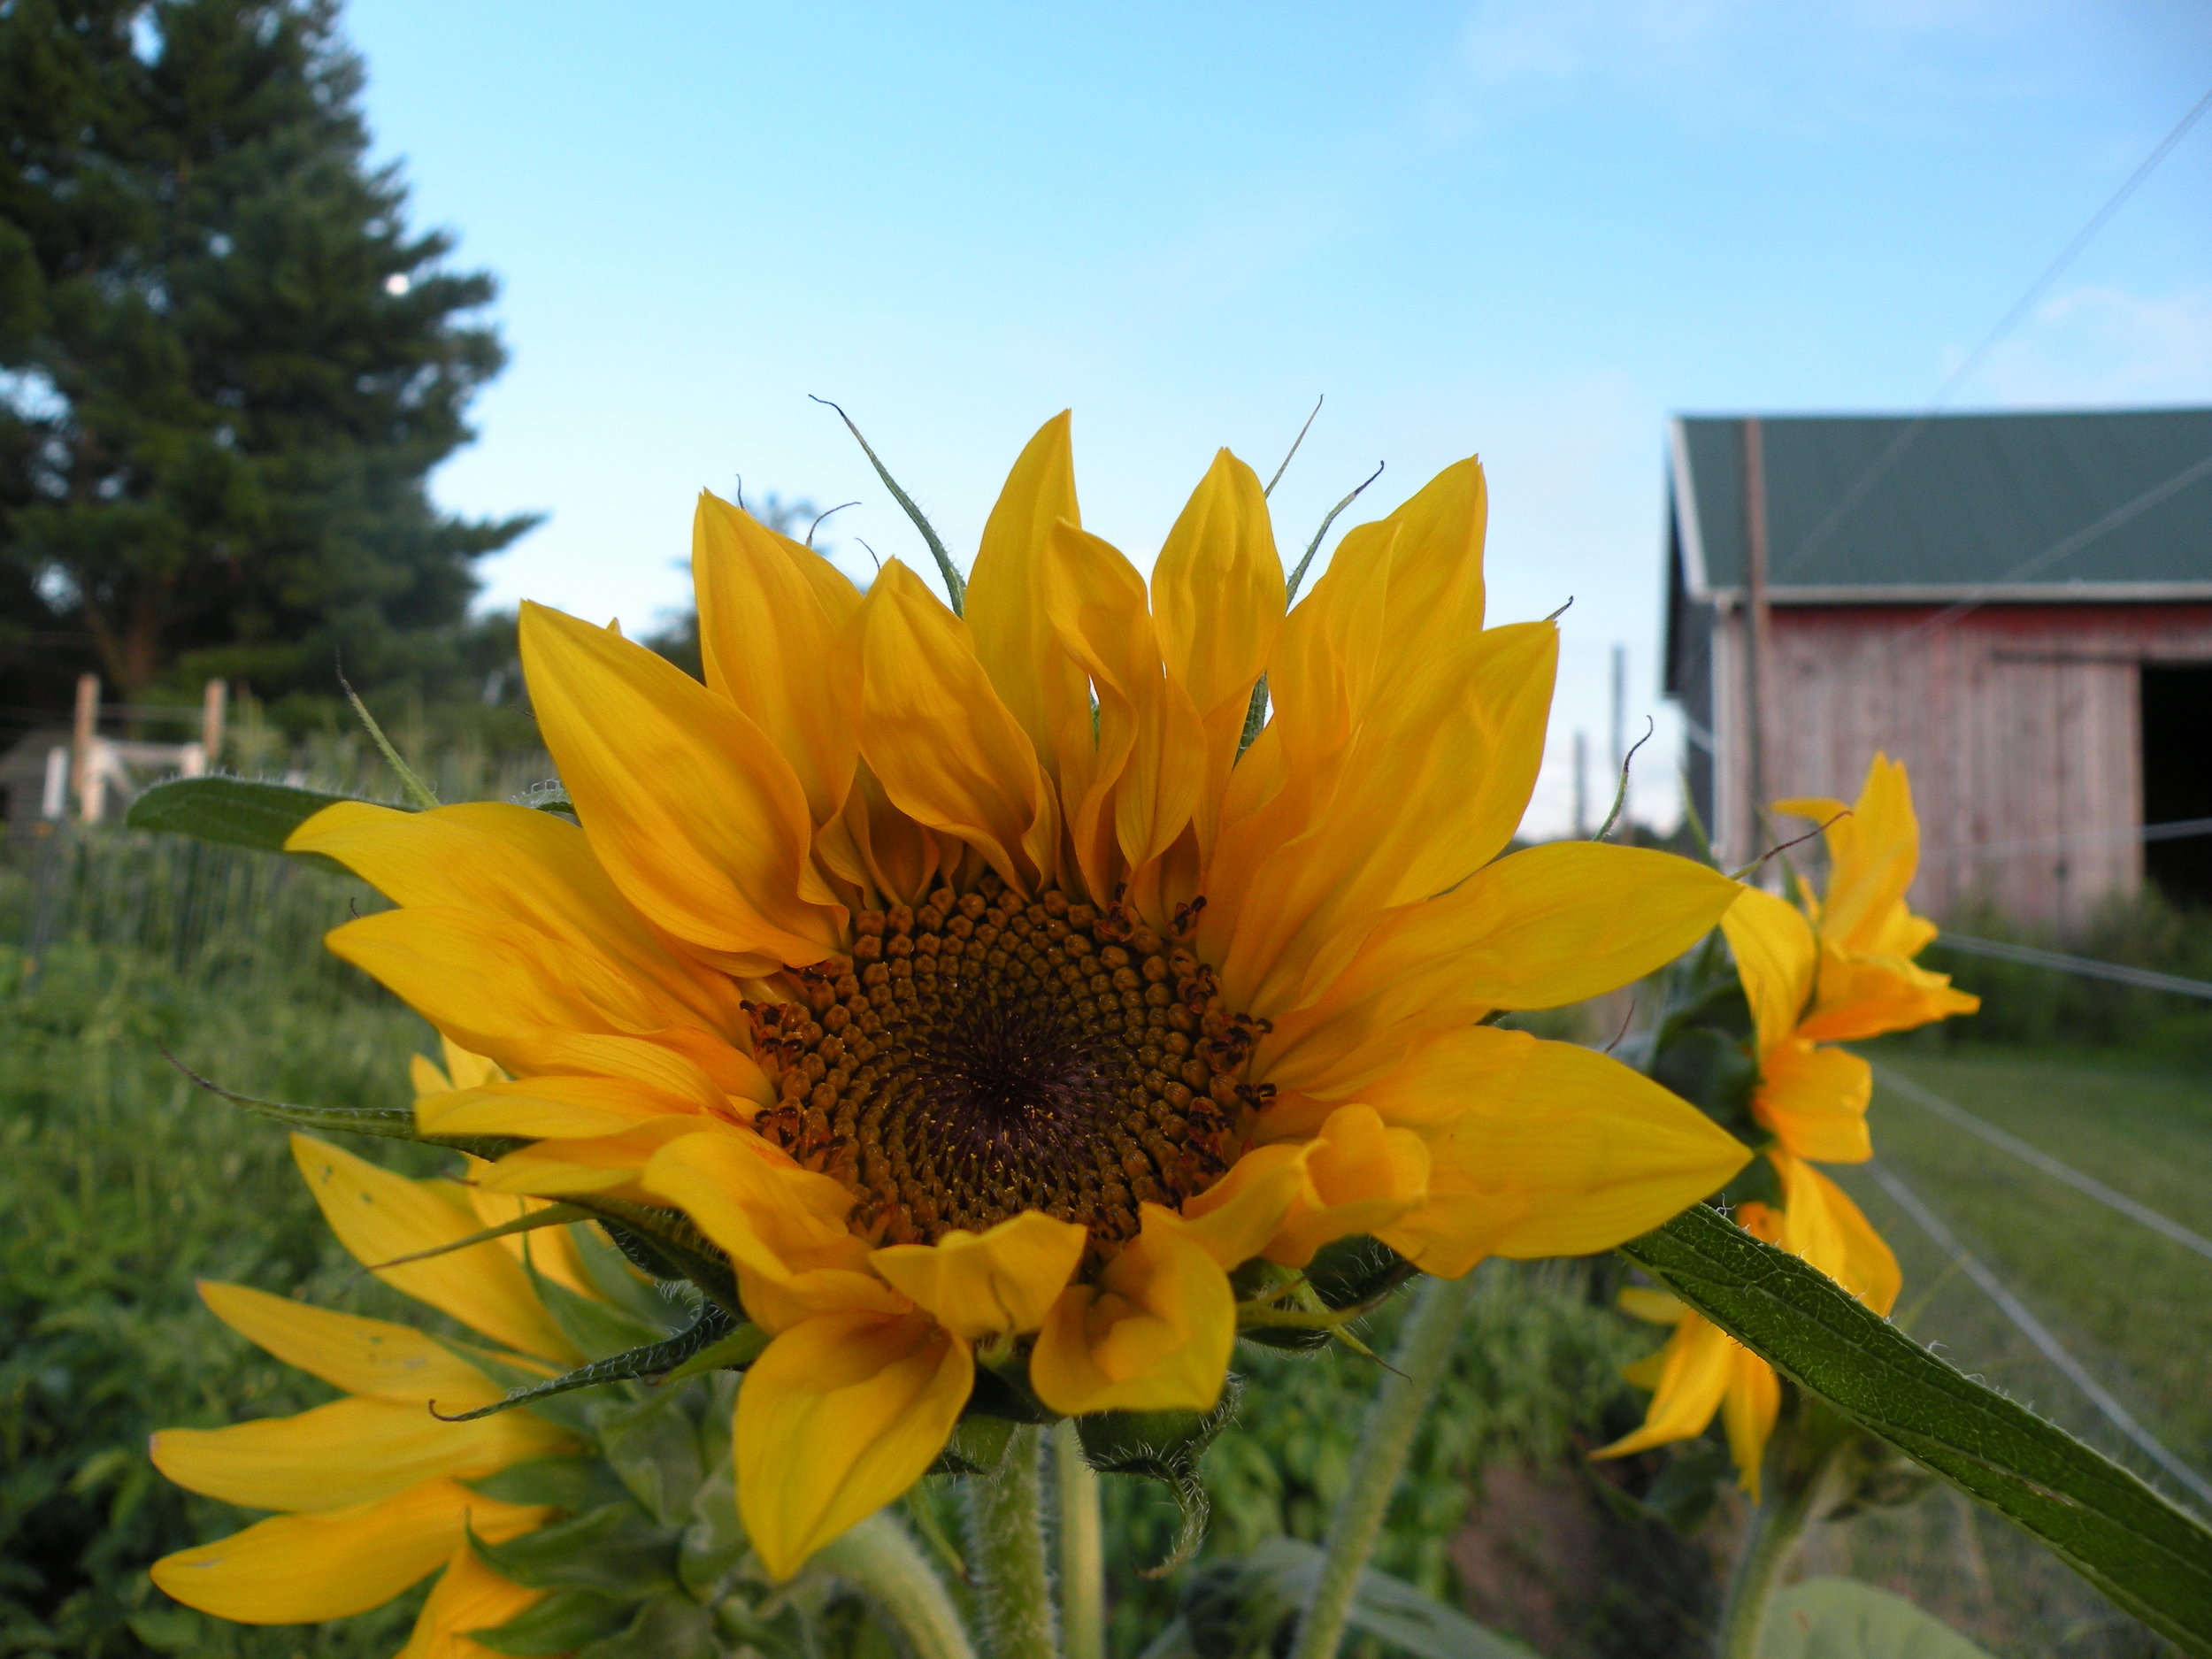 sunflower smiles 7 -1 6 - 16.jpg